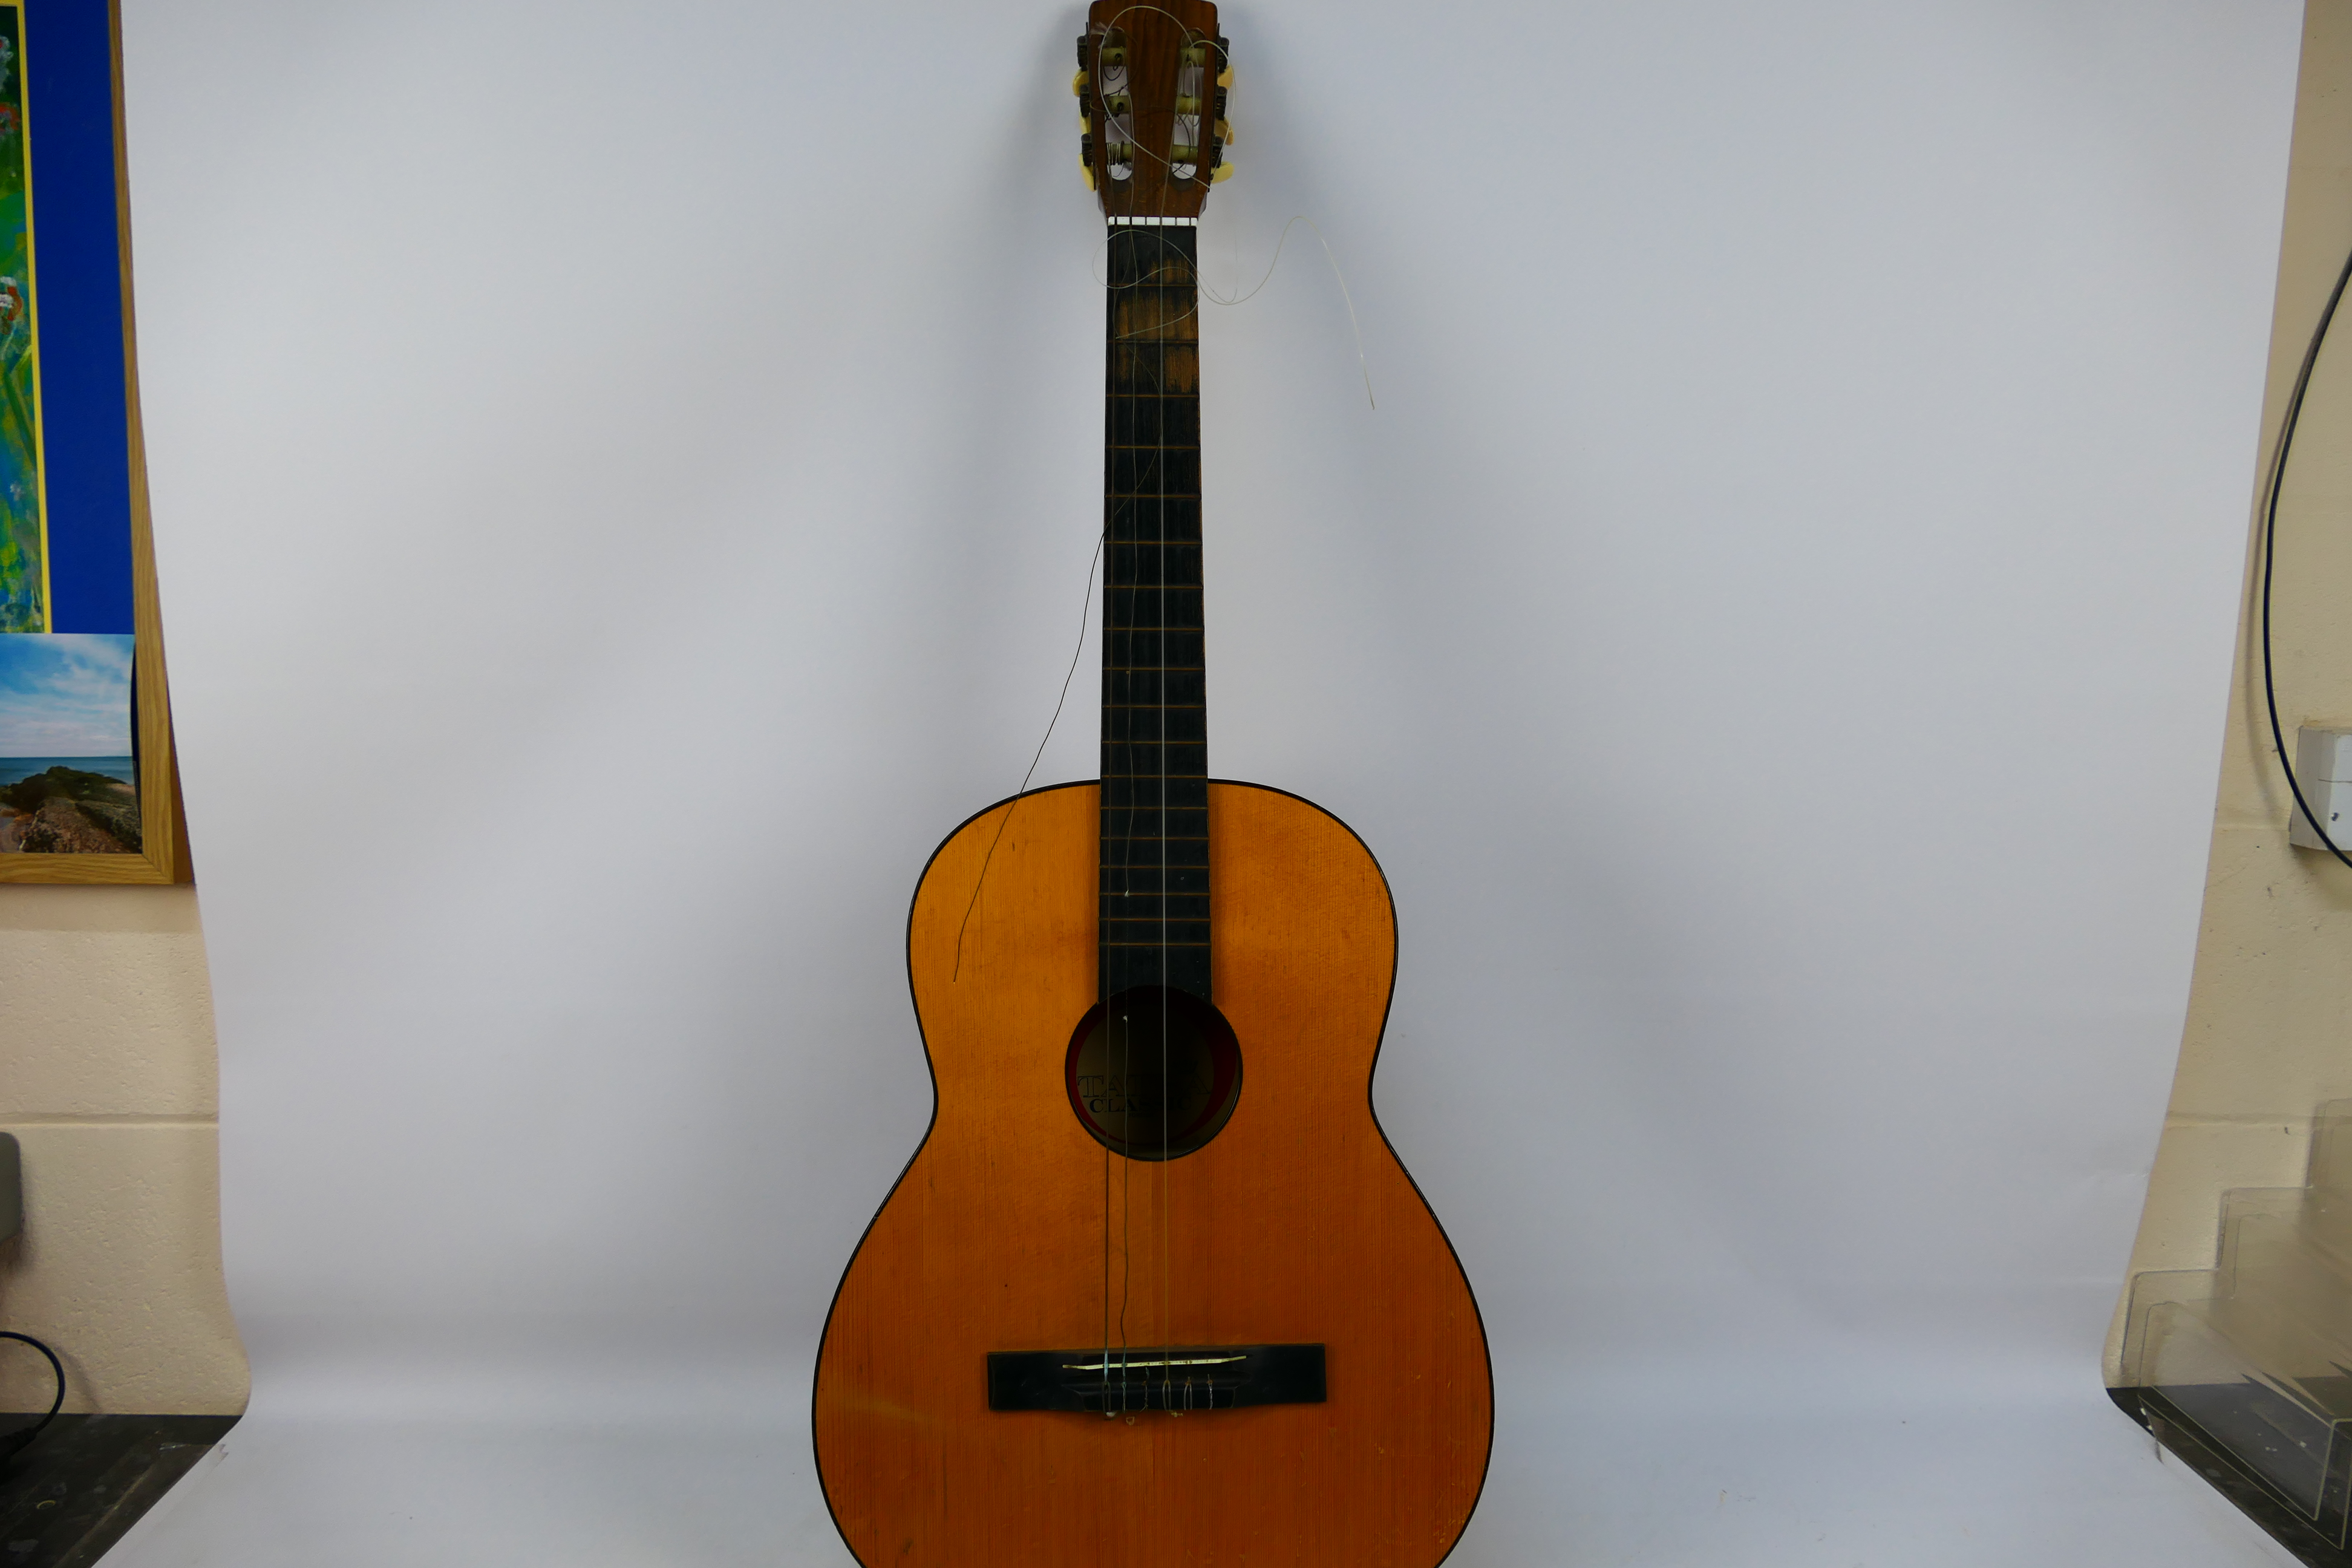 Tatra - A Tatra Classic acoustic guitar